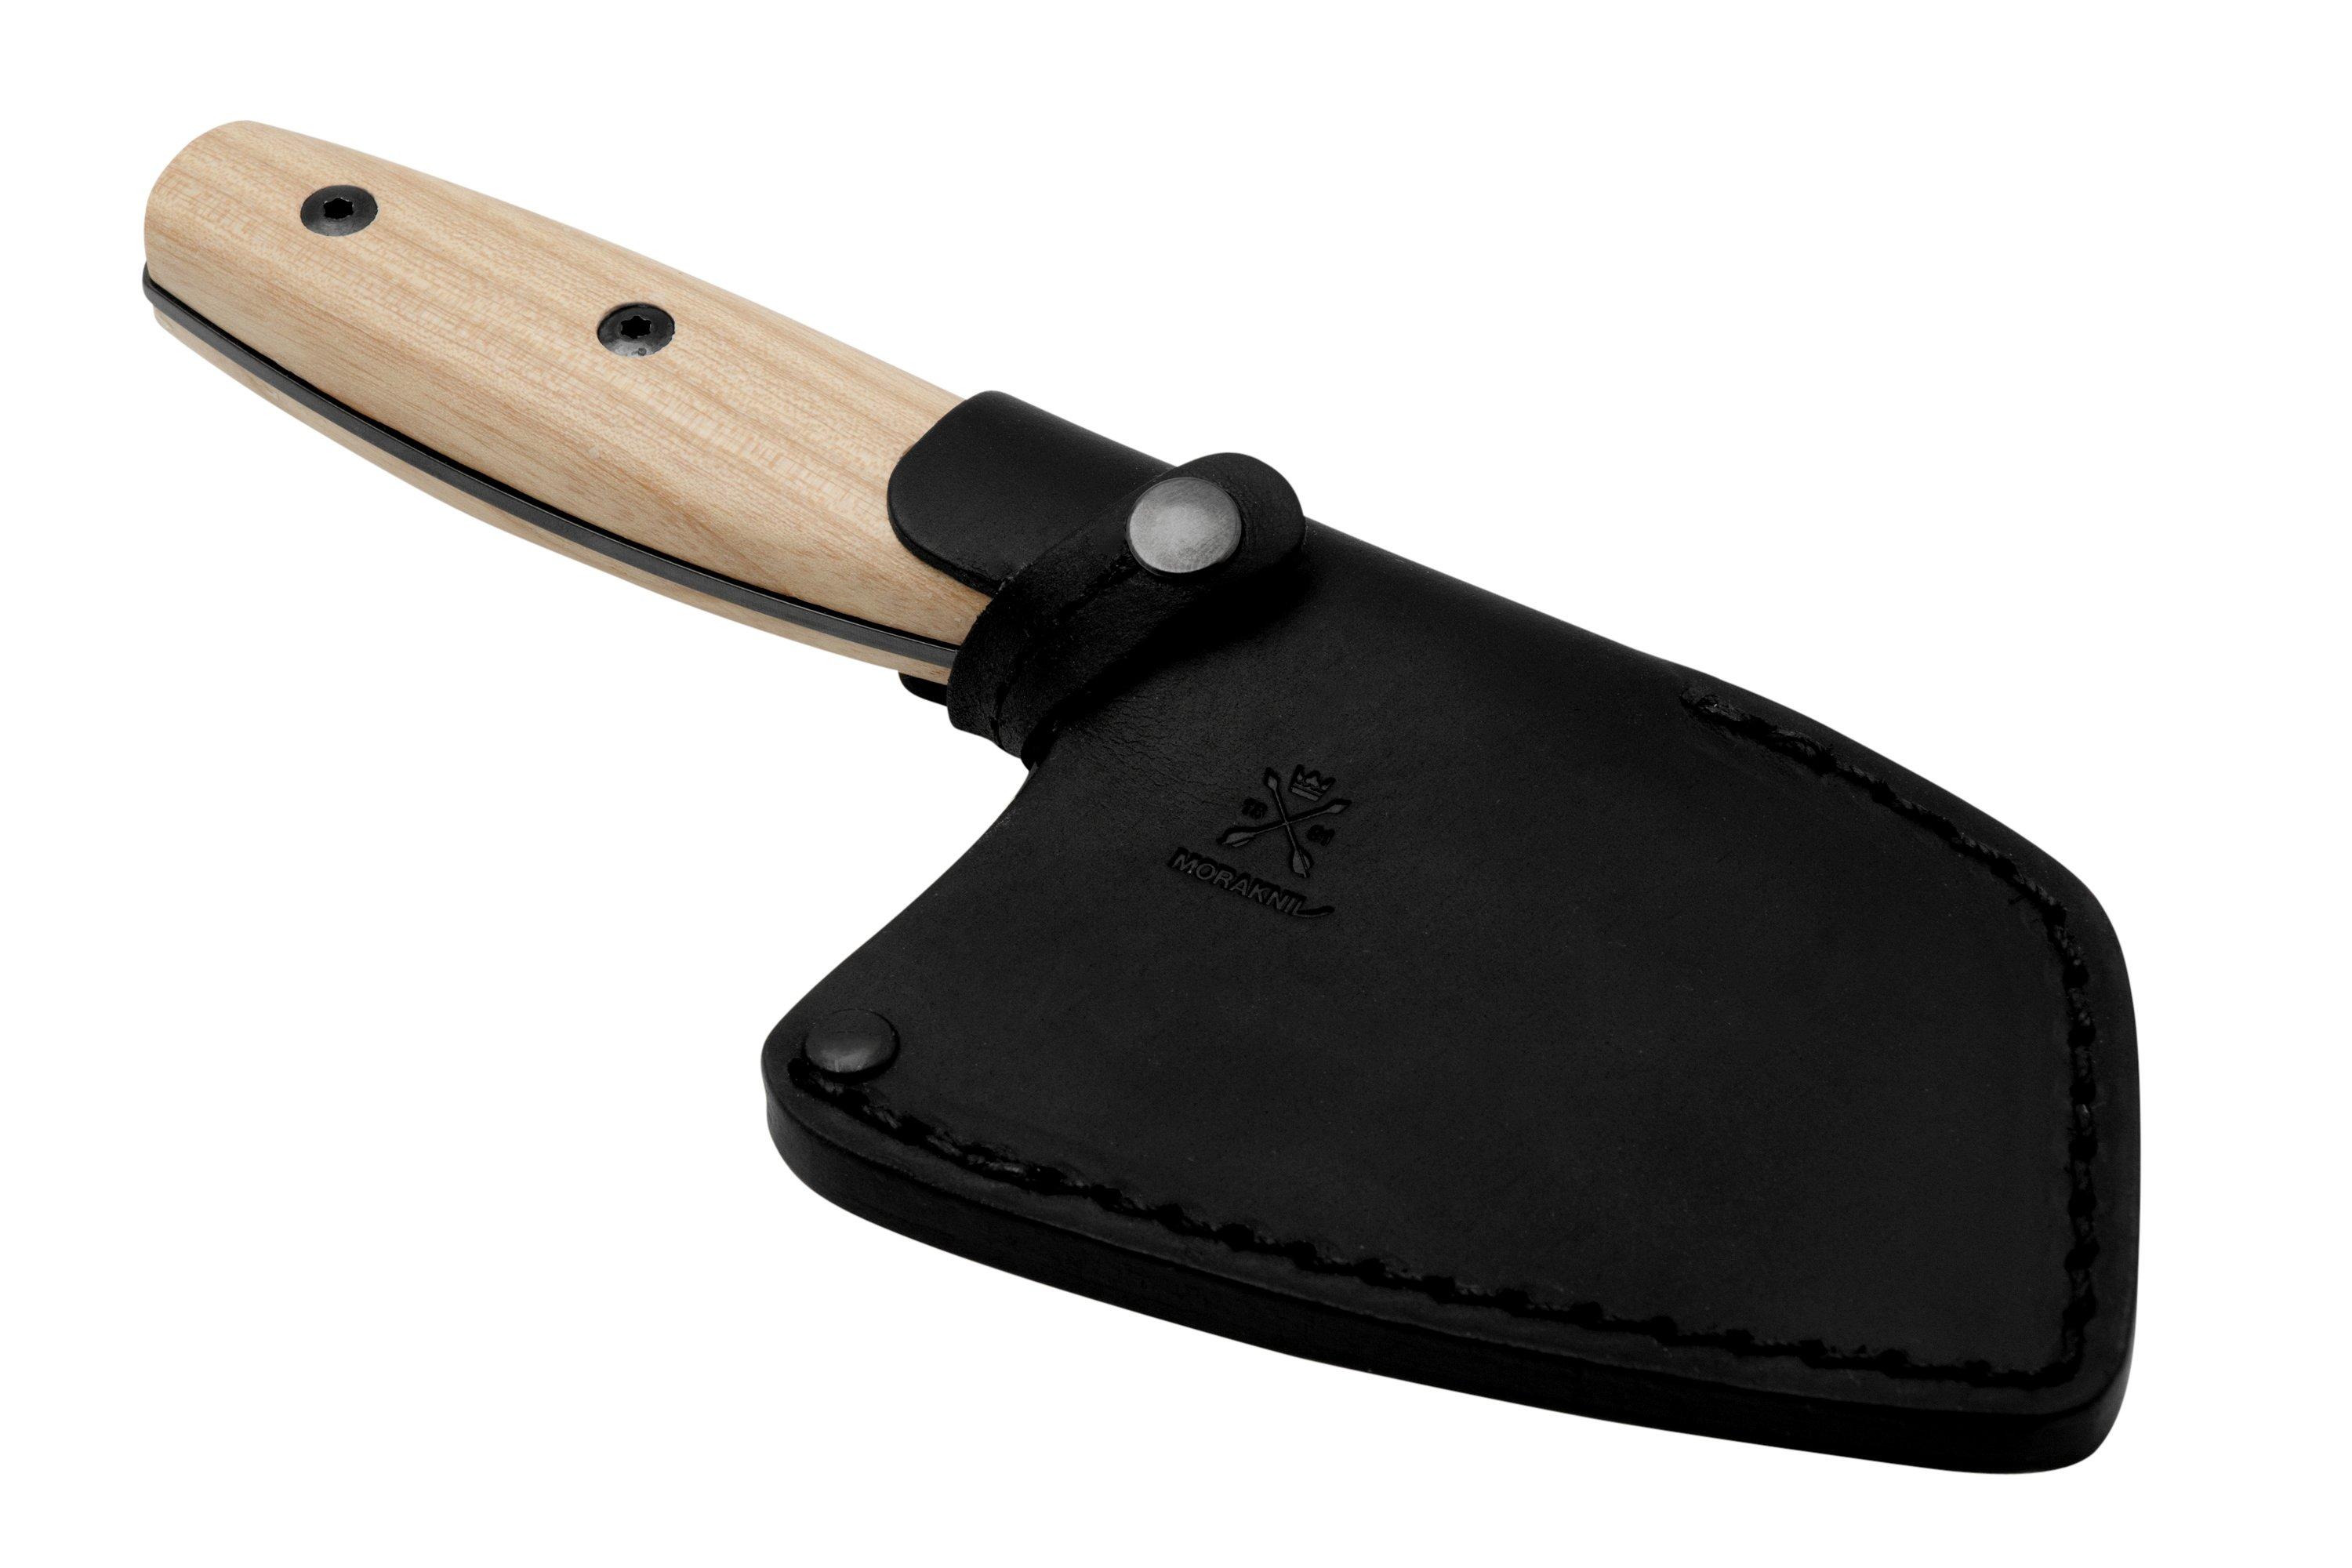 Morakniv Rombo 14086 Ash Wood, Black Blade, outdoor chef's knife